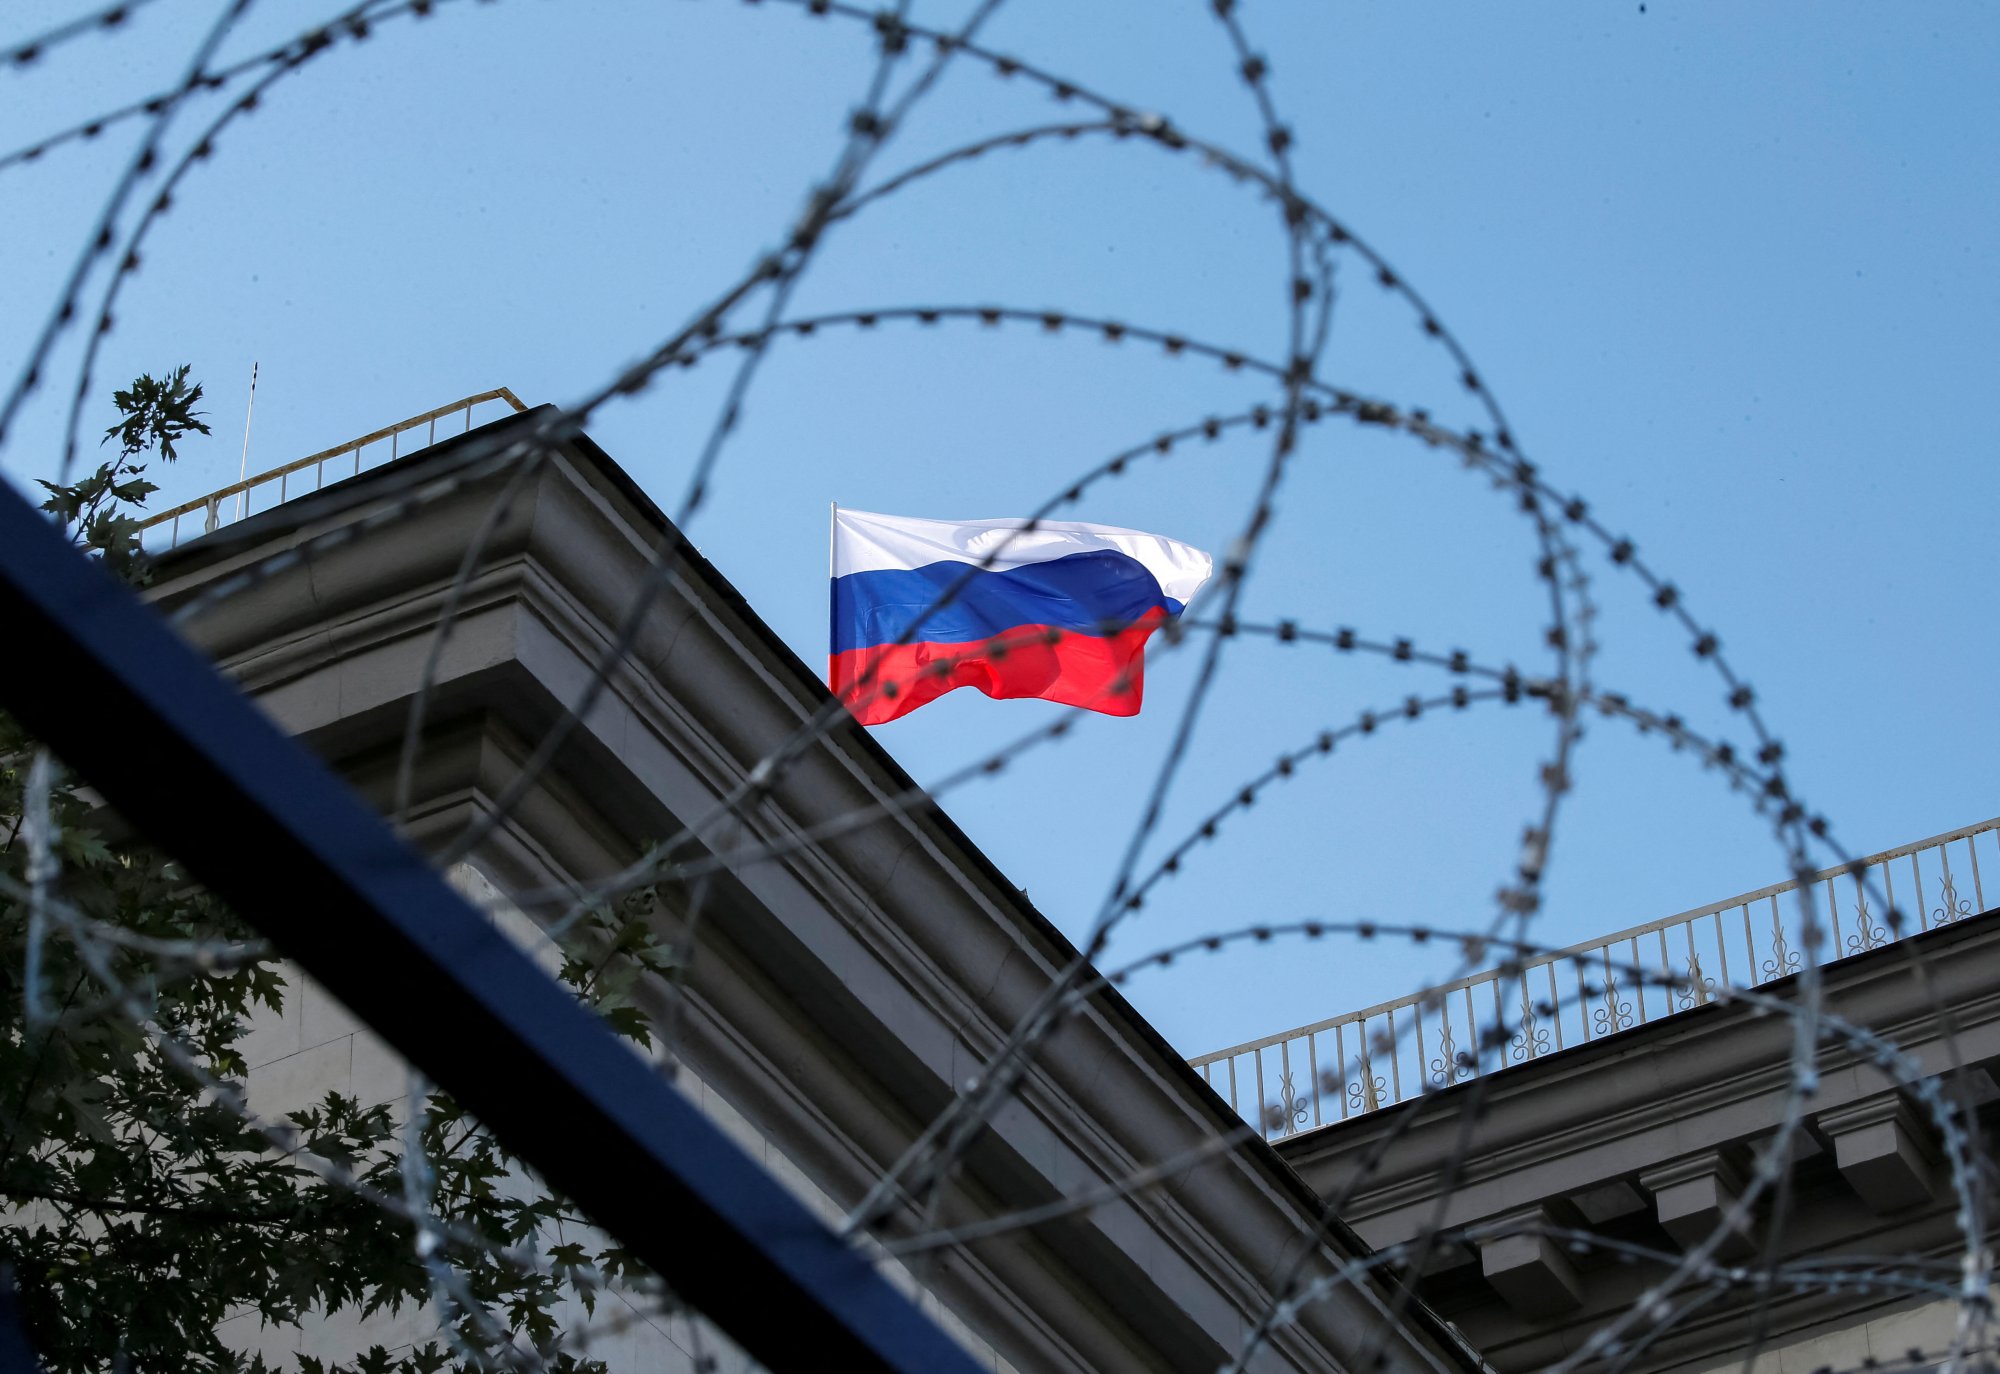 Ρωσία: Οι δυσκολίες στην κατάσχεση ρωσικών περιουσιακών στοιχείων